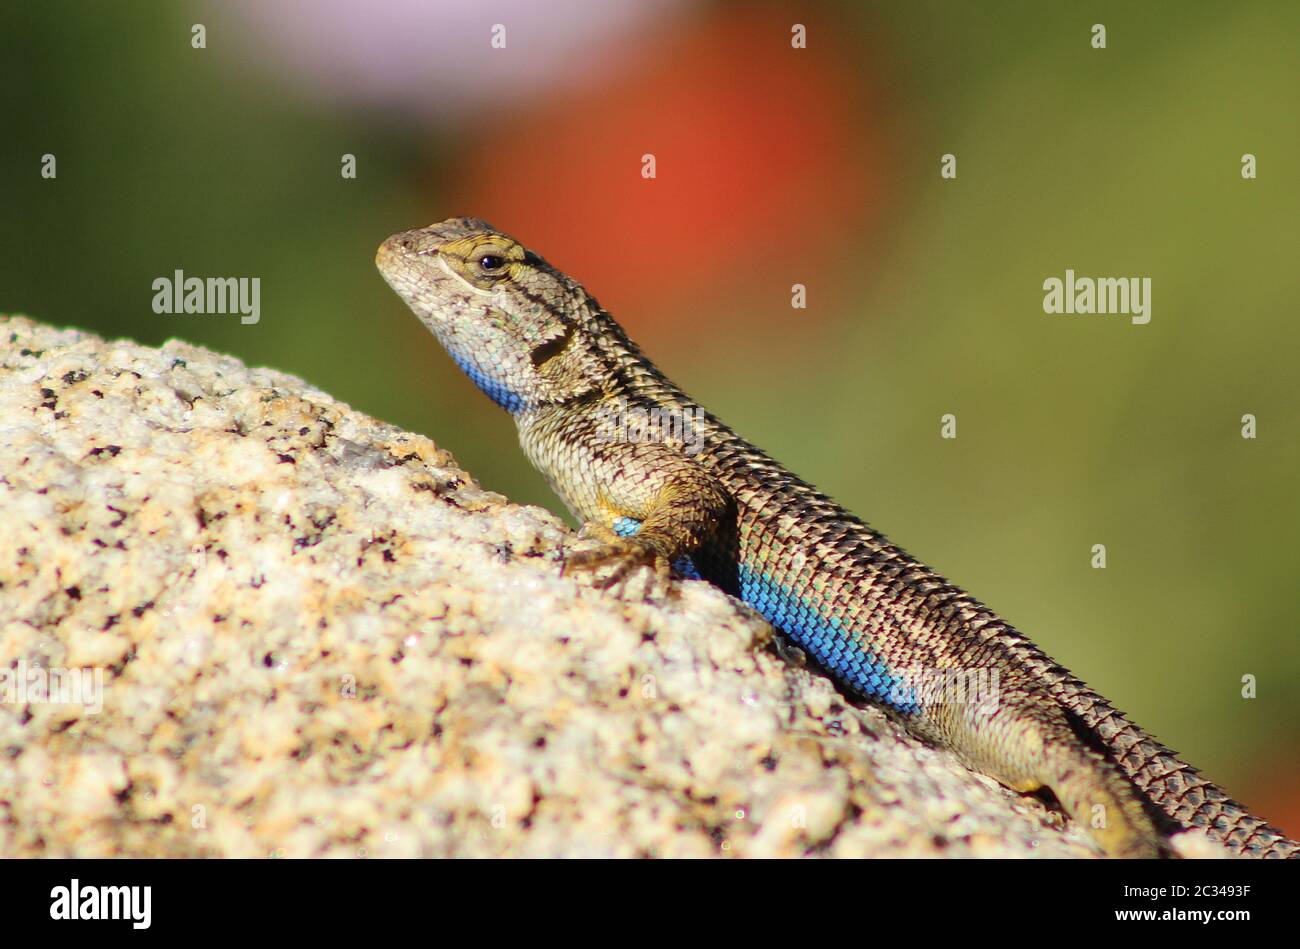 Primo piano di un Western Fence Lizard su una roccia, mostrando il suo ventre blu Foto Stock